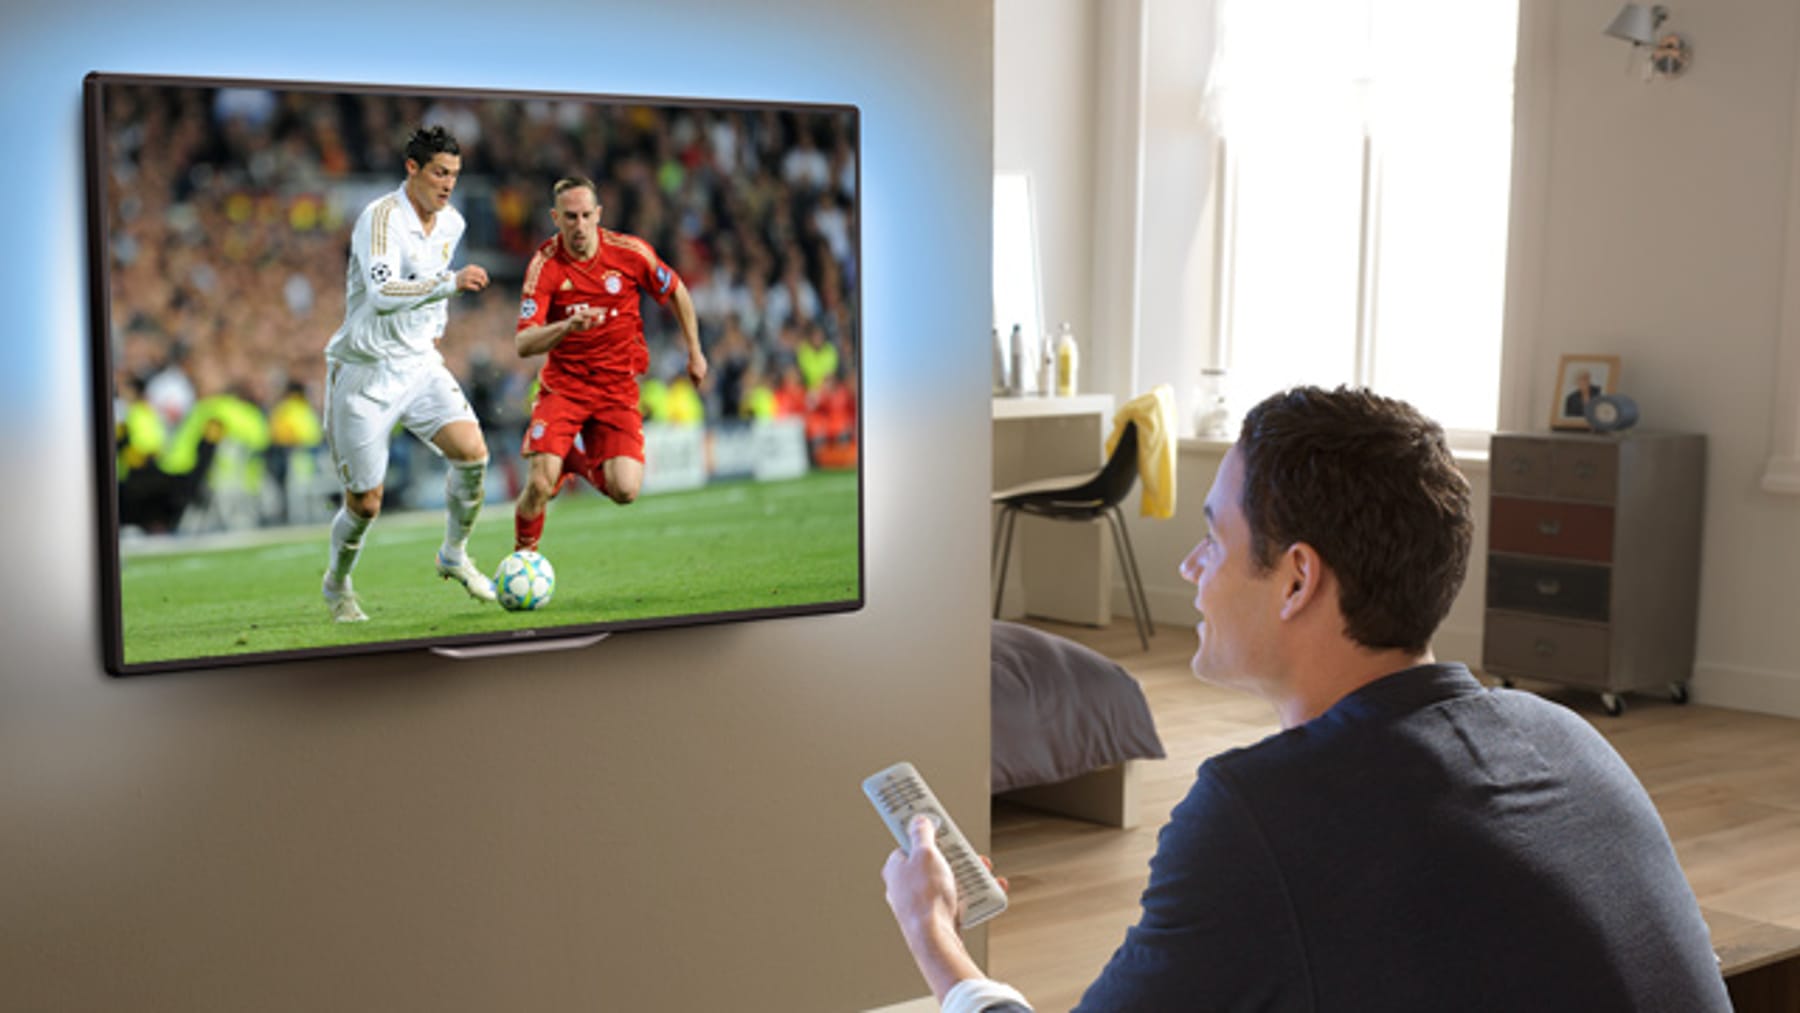 WM 2018 So machen Sie Ihr Wohnzimmer für die Fußball-WM HD-tauglich